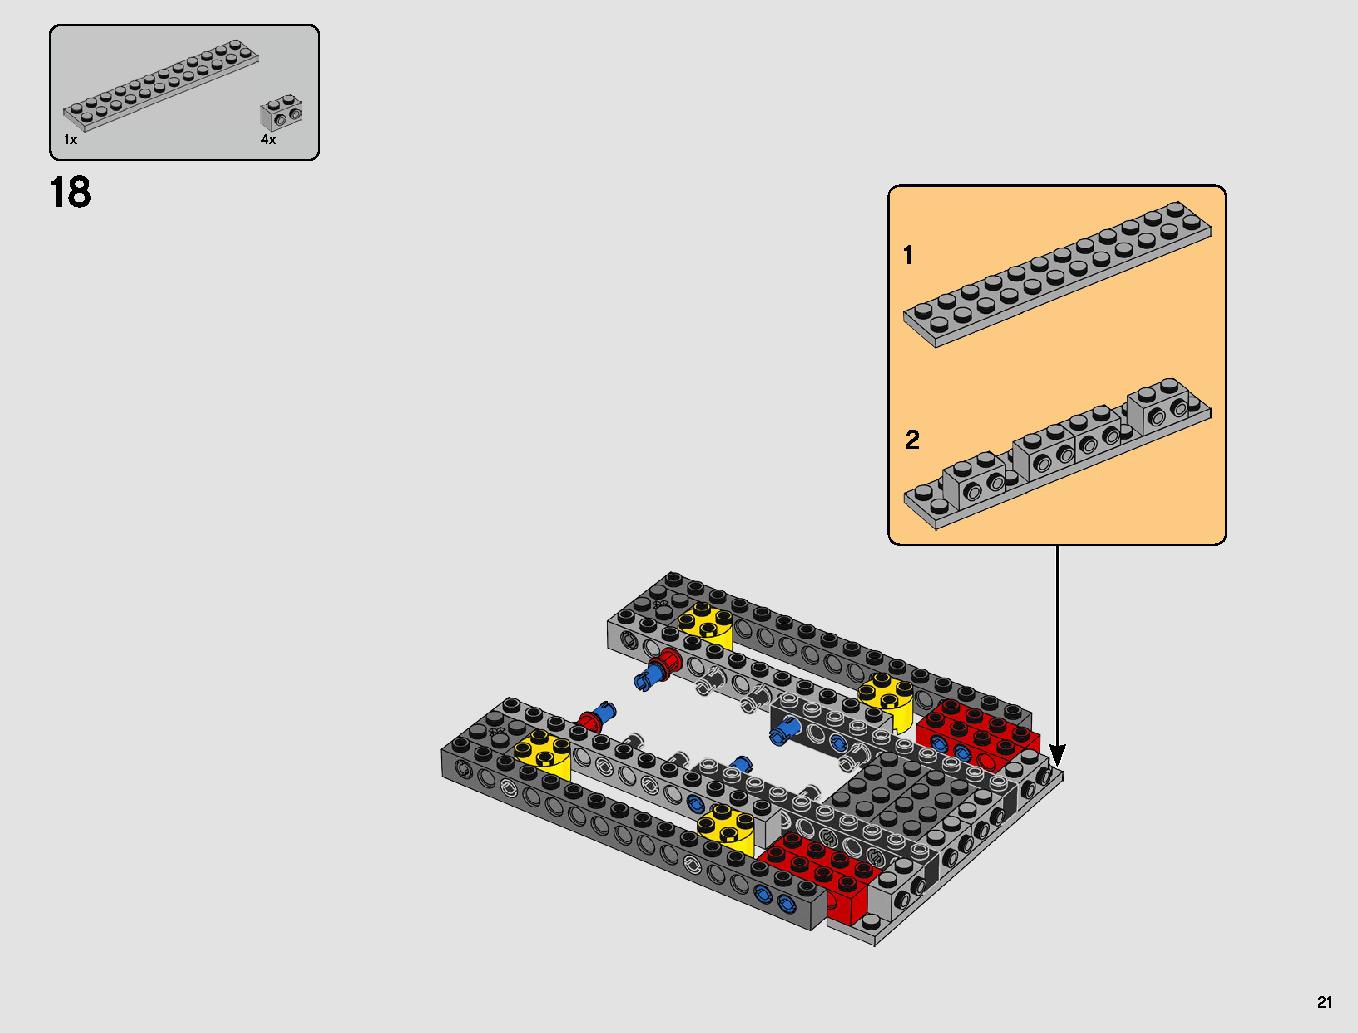 スレーヴl™ – 20周年記念モデル 75243 レゴの商品情報 レゴの説明書・組立方法 21 page